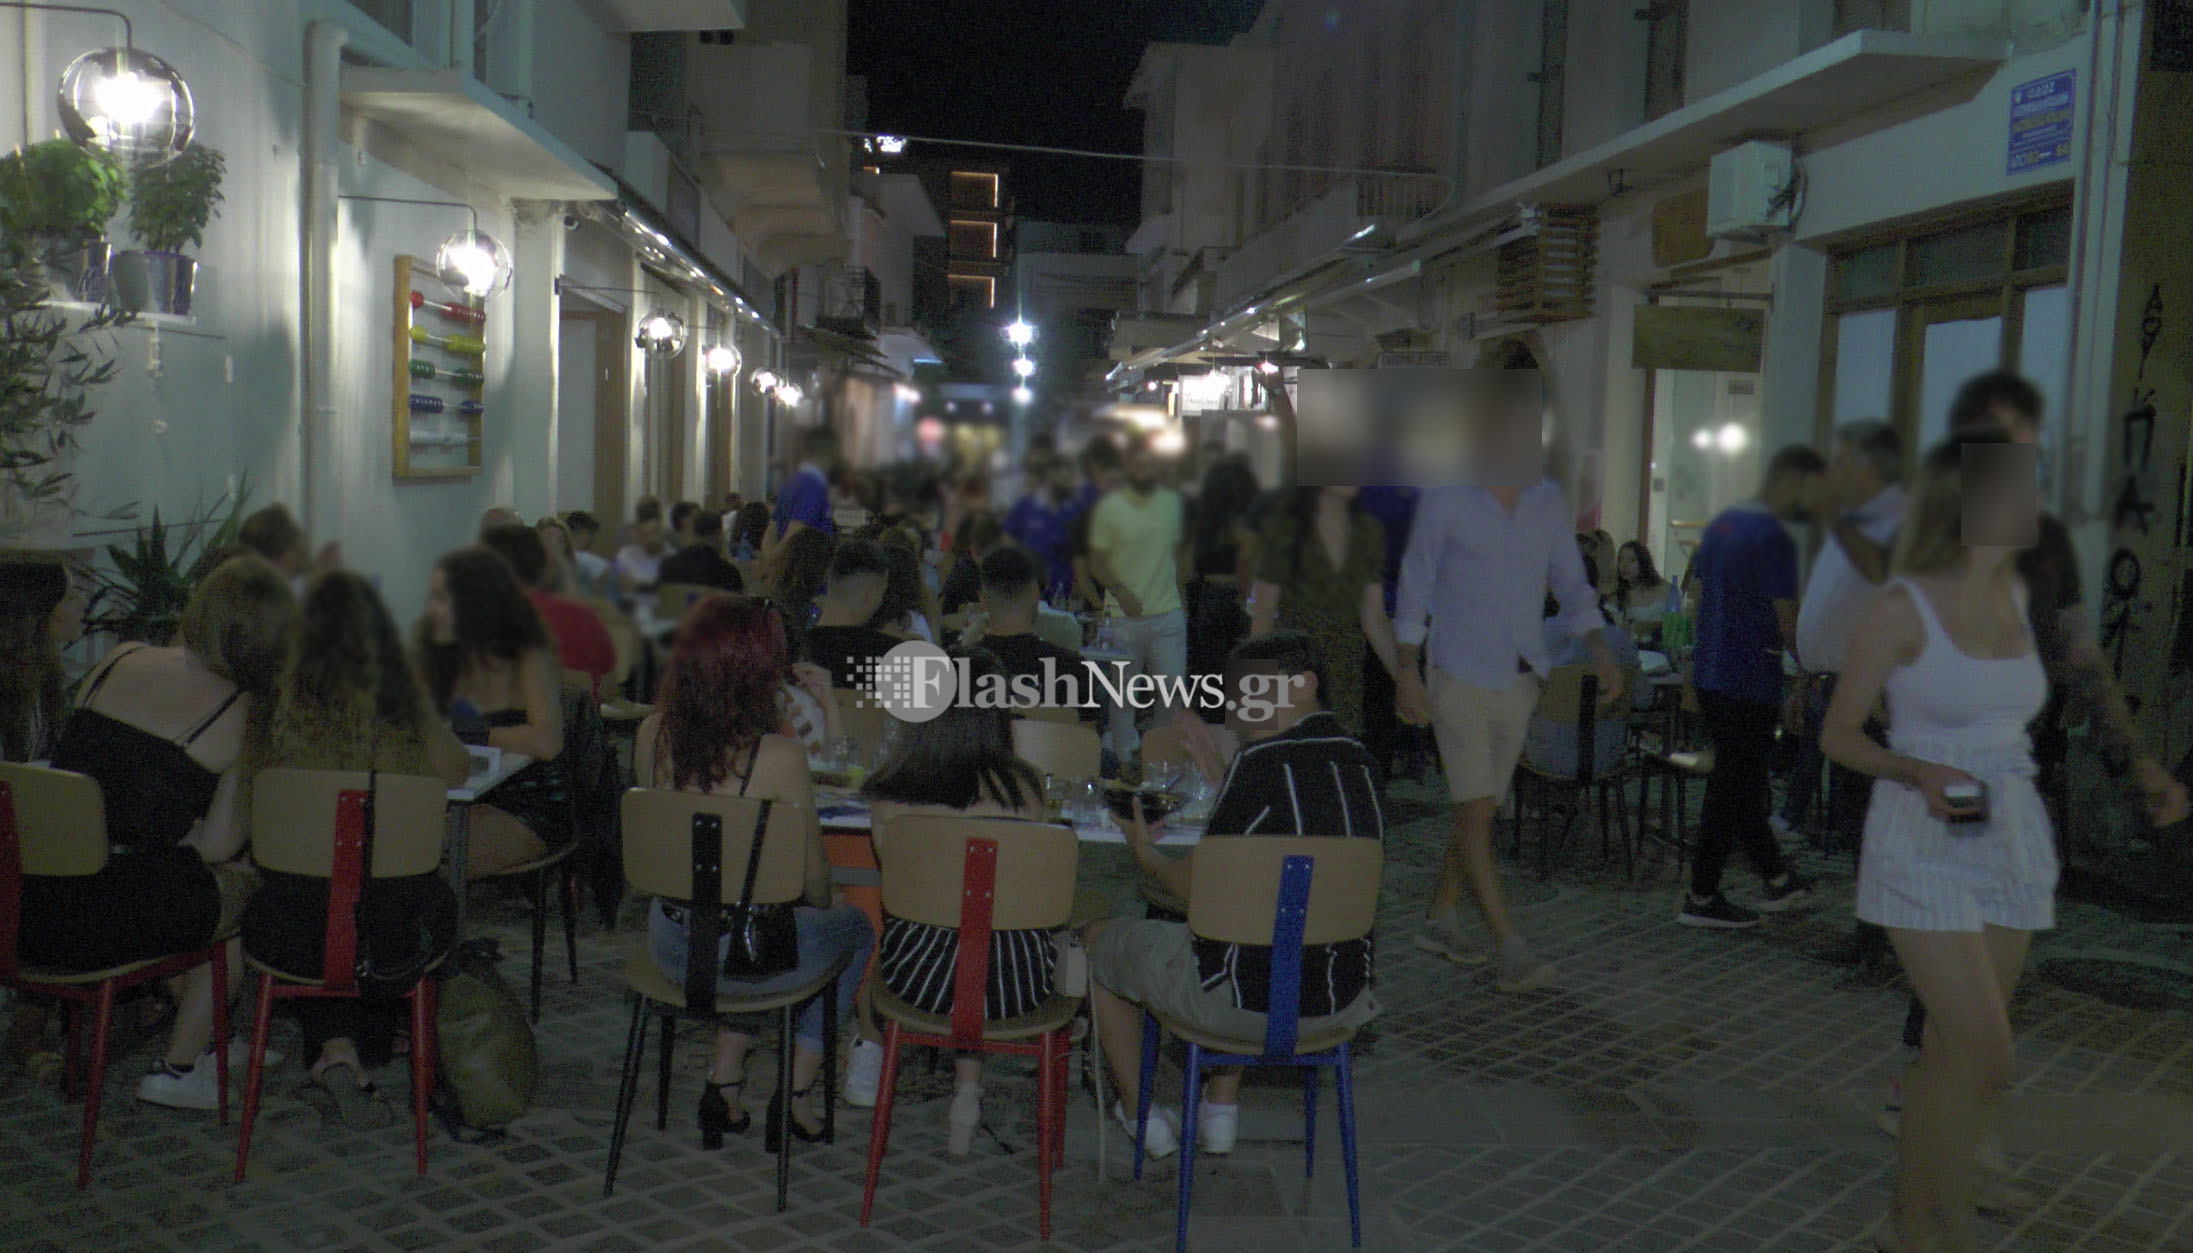 Πρώτο βράδυ στα Χανιά με μουσική και εως τη 1.30 έξω – Γέμισαν τα μαγαζιά (φωτο – video)